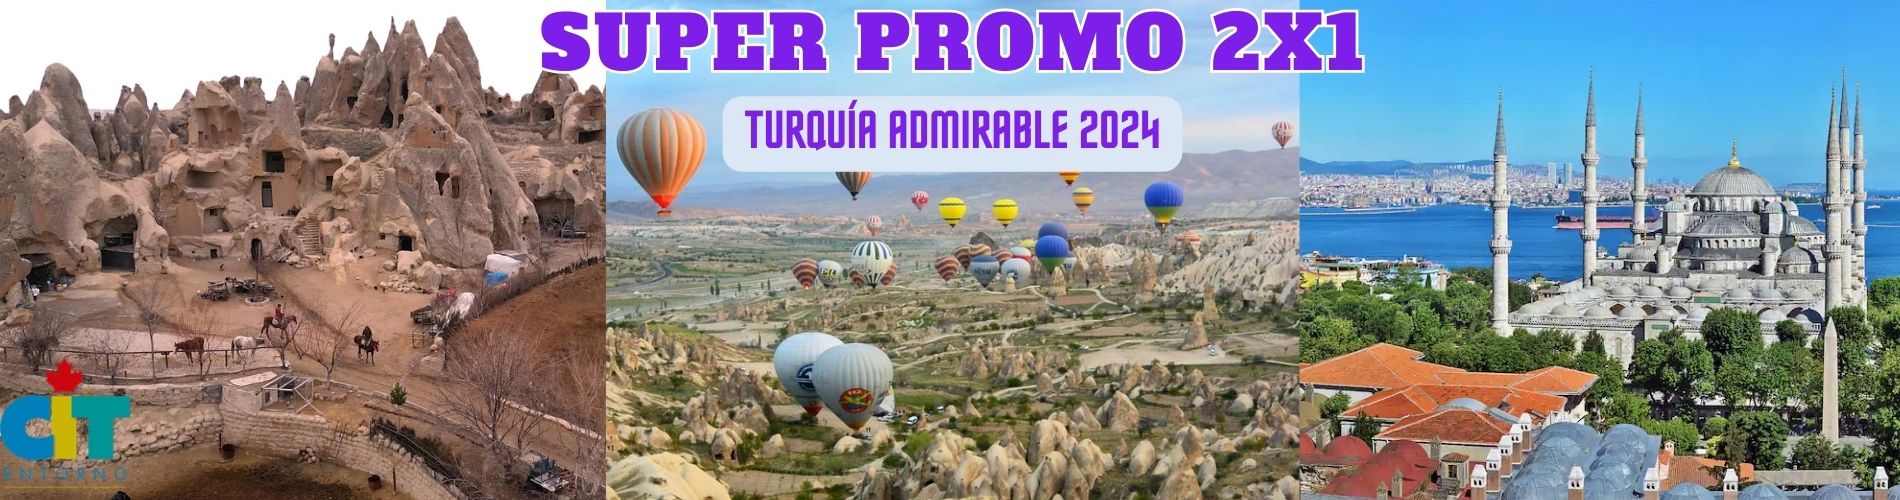 Turquía Admirable 10 días, Super Promo 2x1